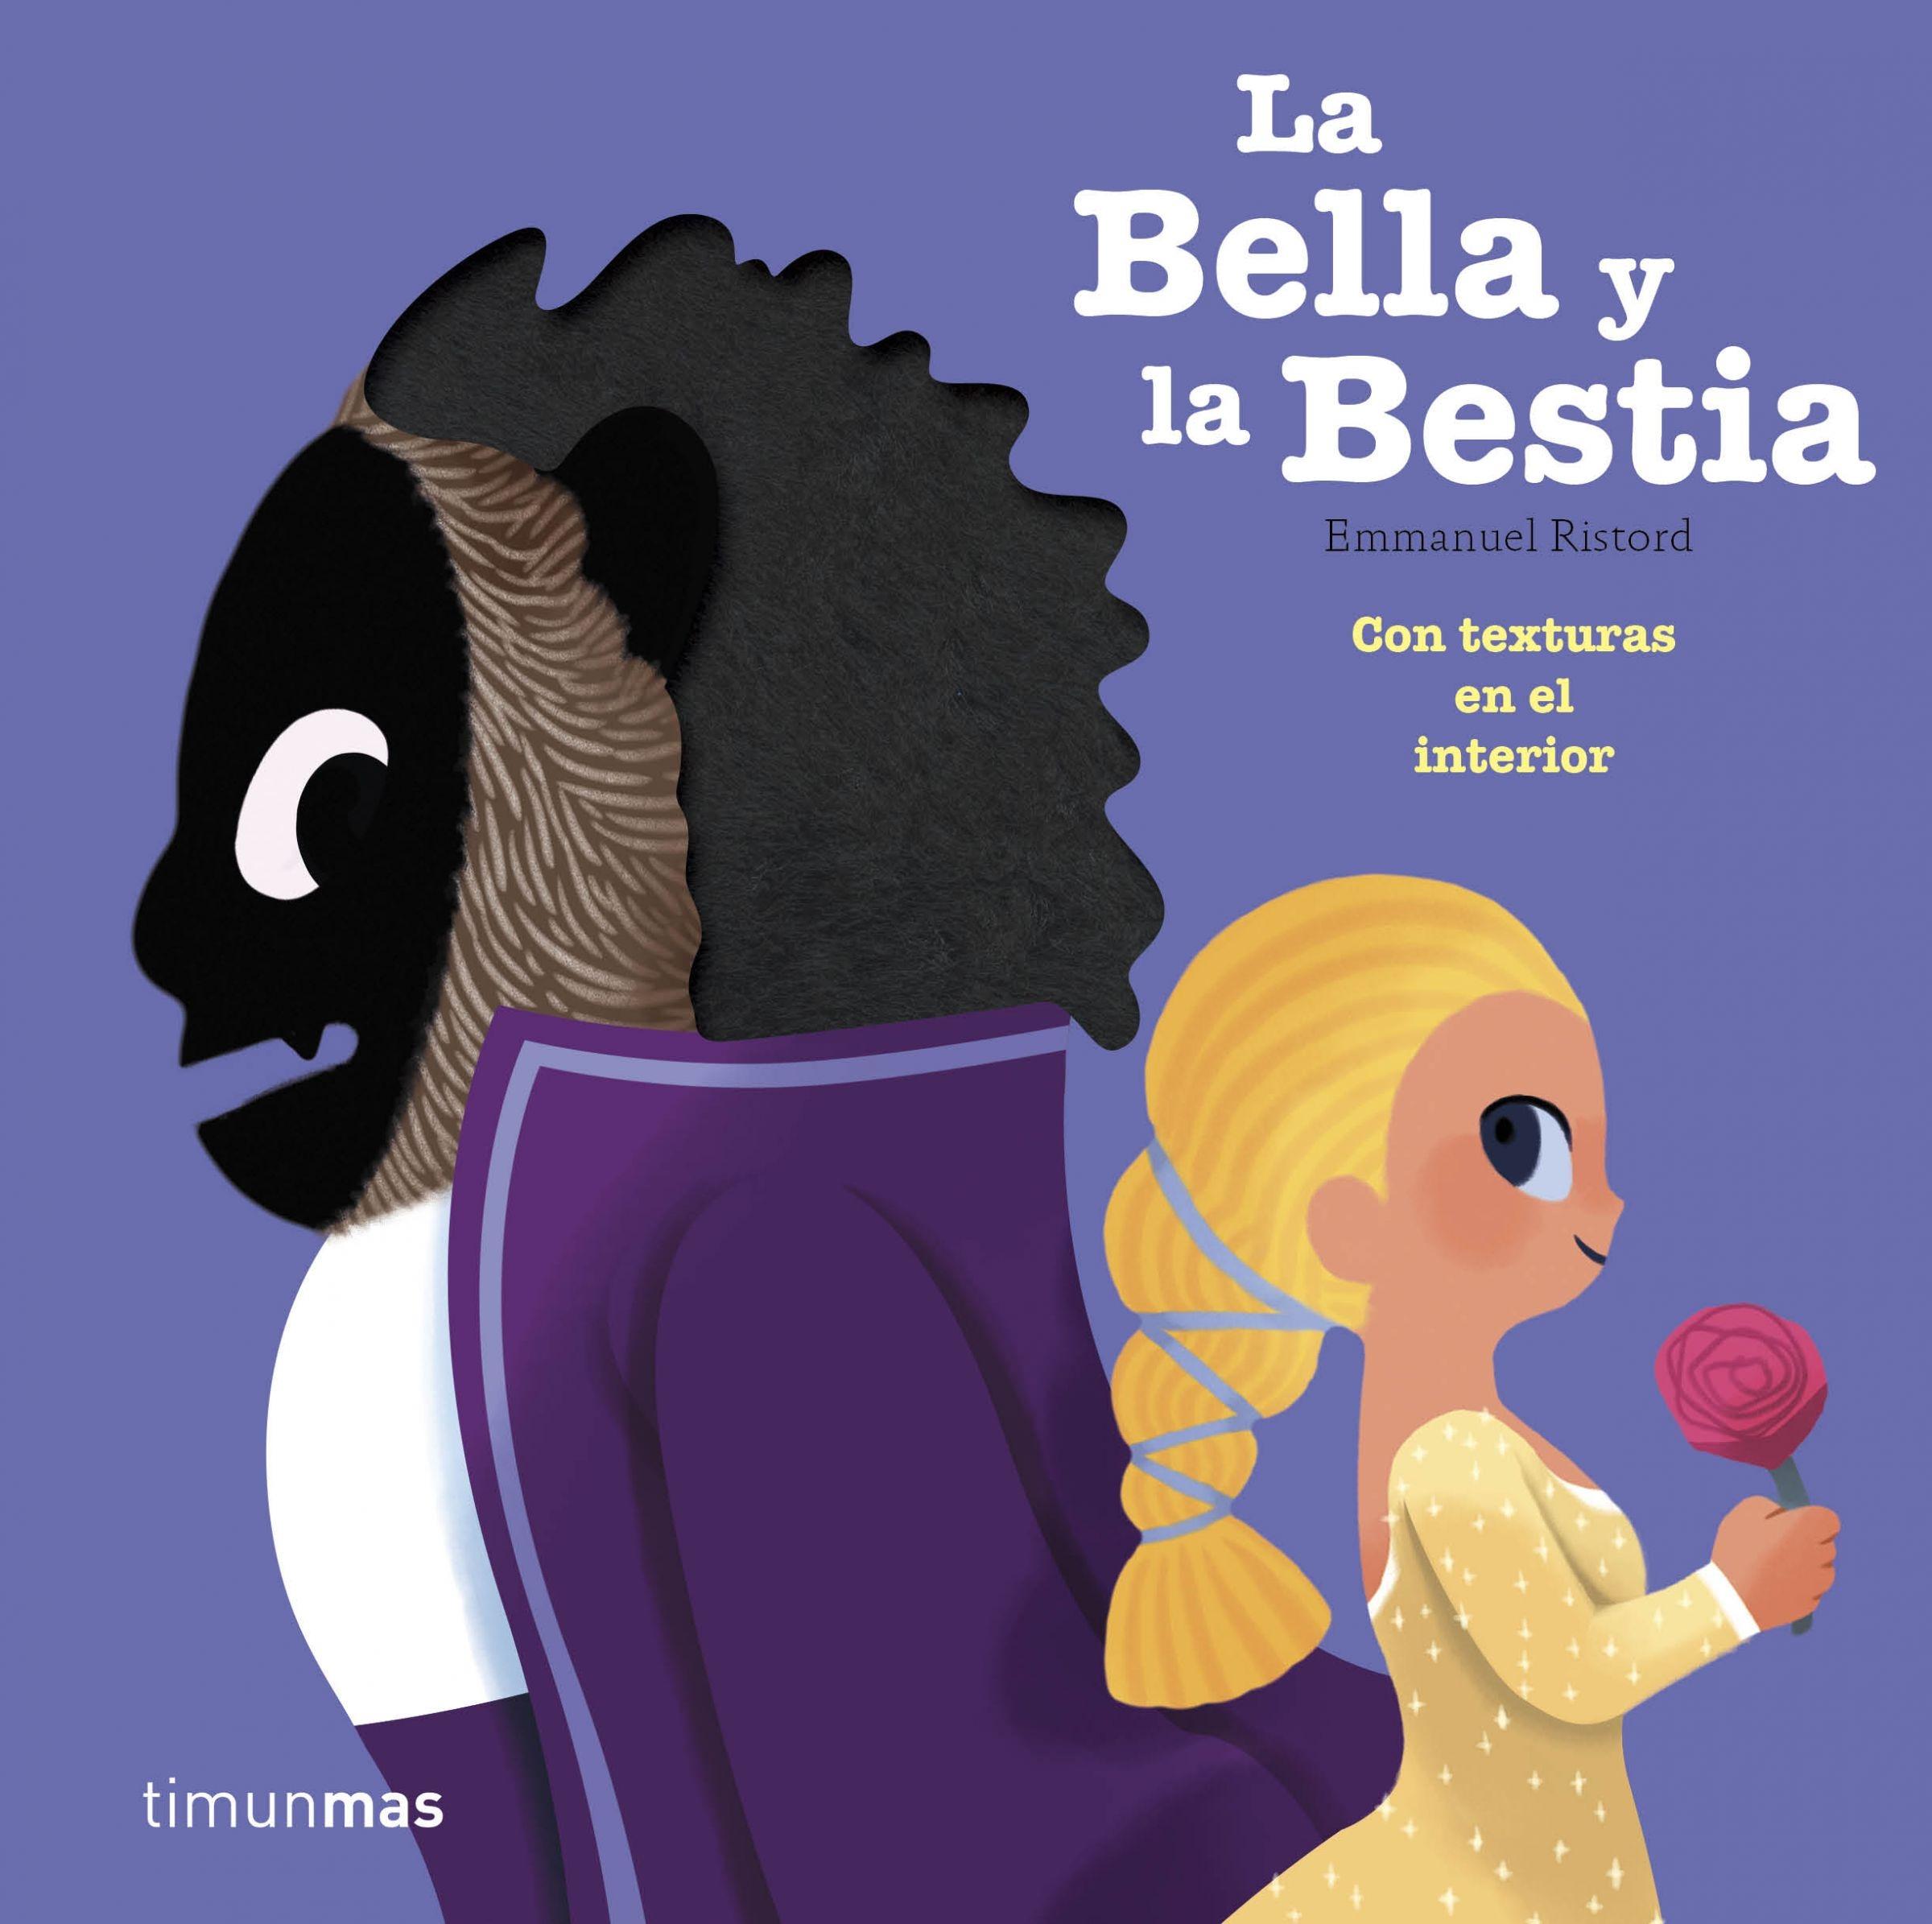 La Bella y la Bestia "Con texturas en el interior". 